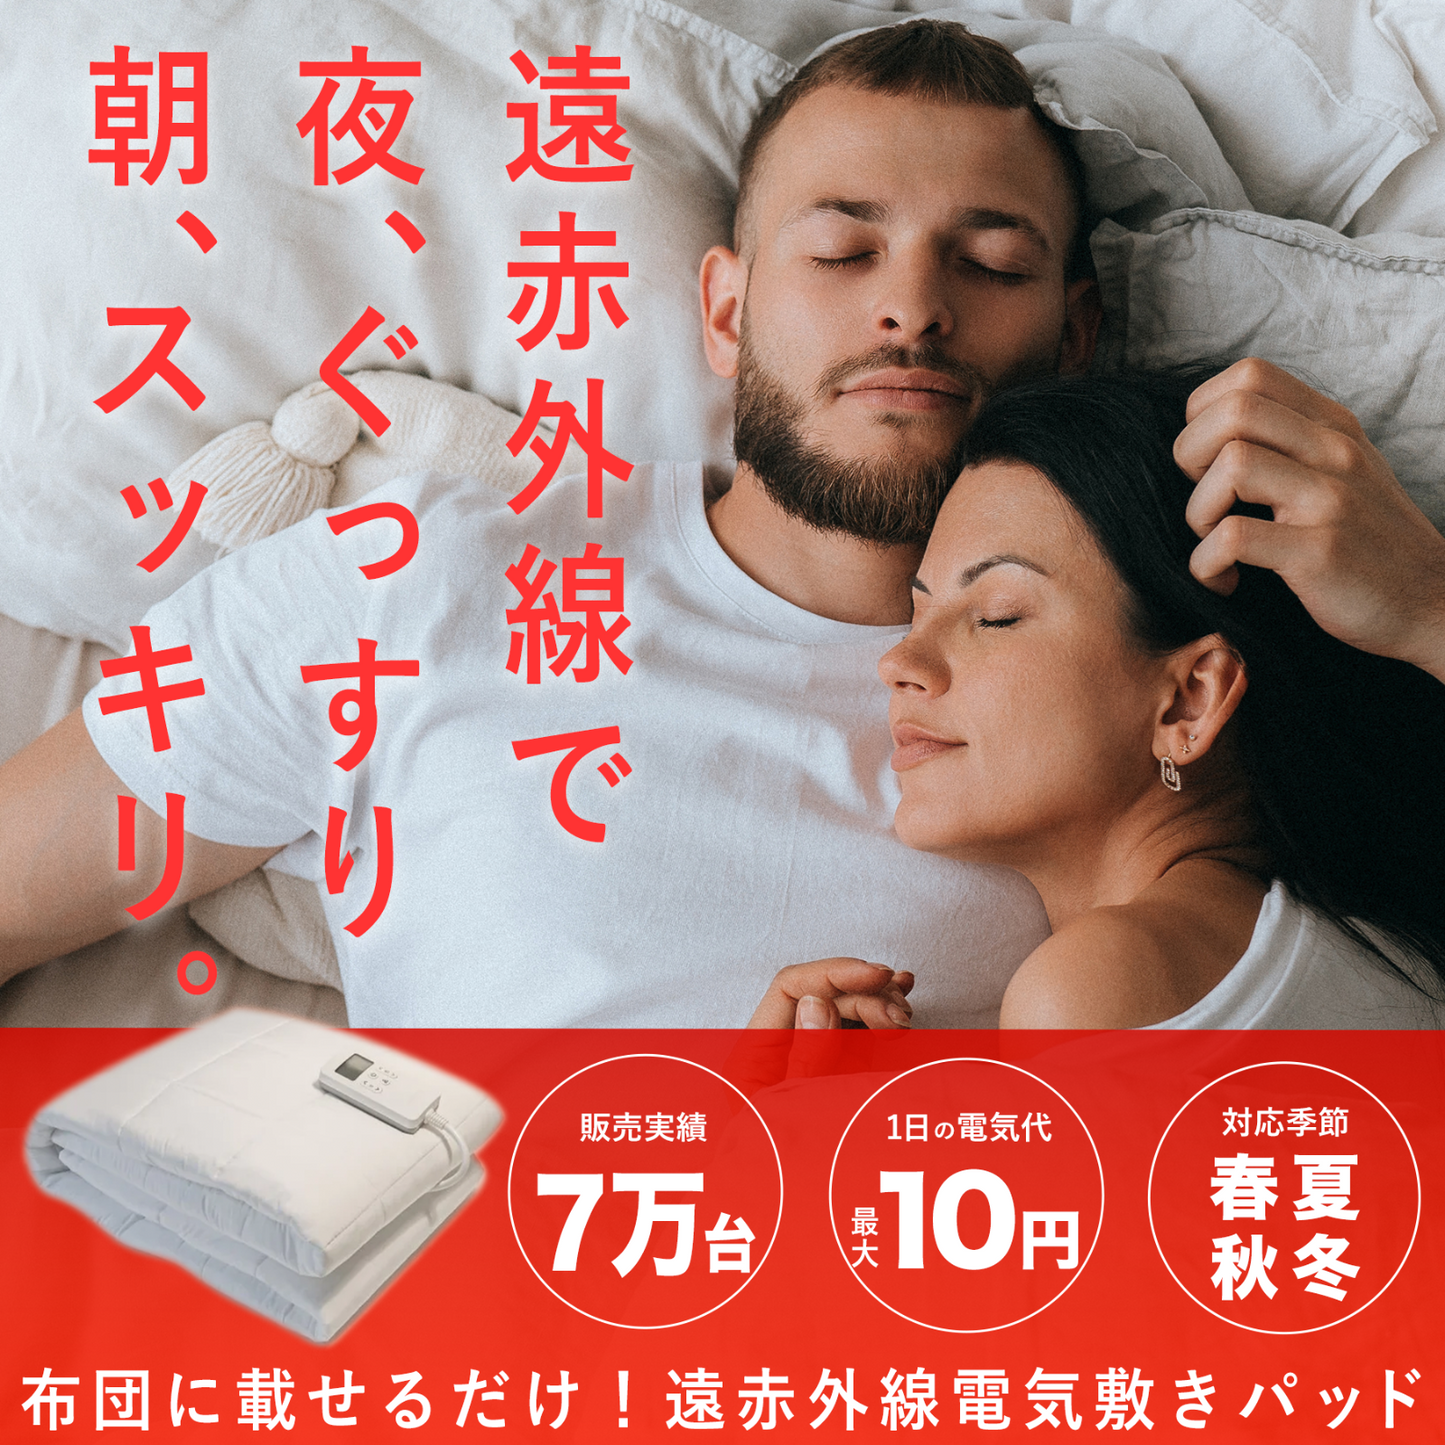 遠赤外線で「ととのう」睡眠を実現する電気敷きパッド「Litual」